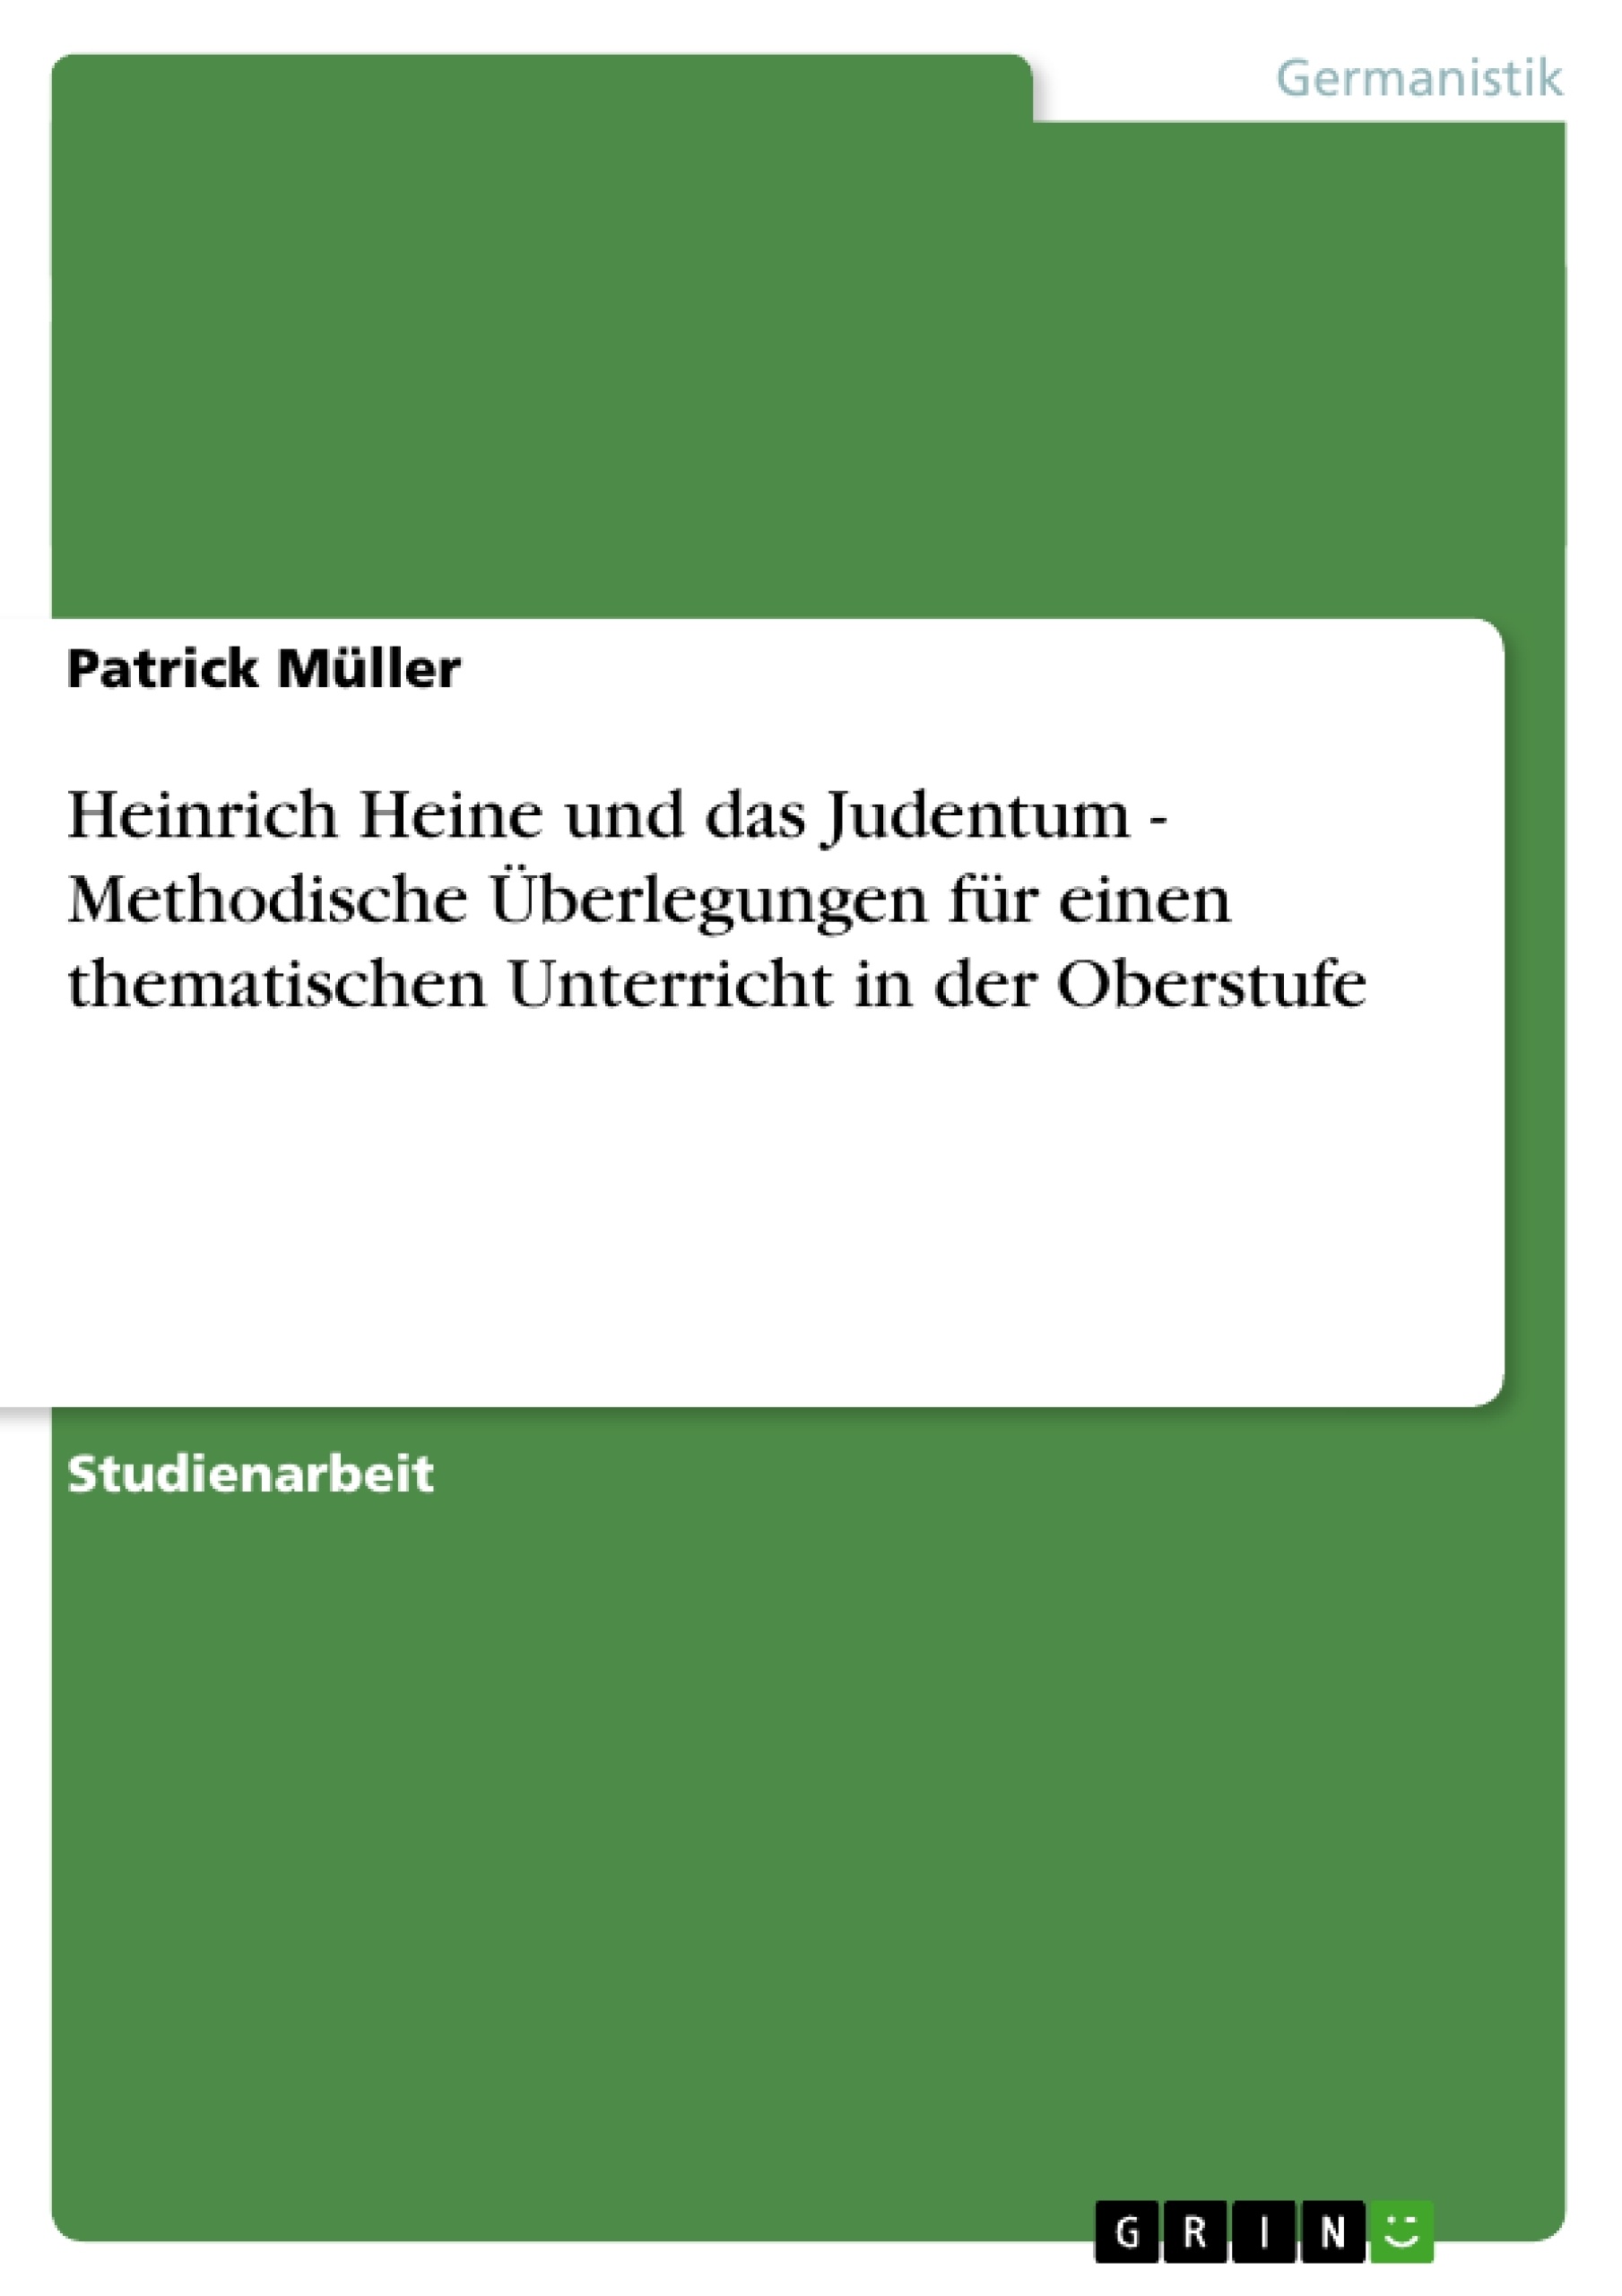 Título: Heinrich Heine und das Judentum - Methodische Überlegungen für einen thematischen Unterricht in der Oberstufe